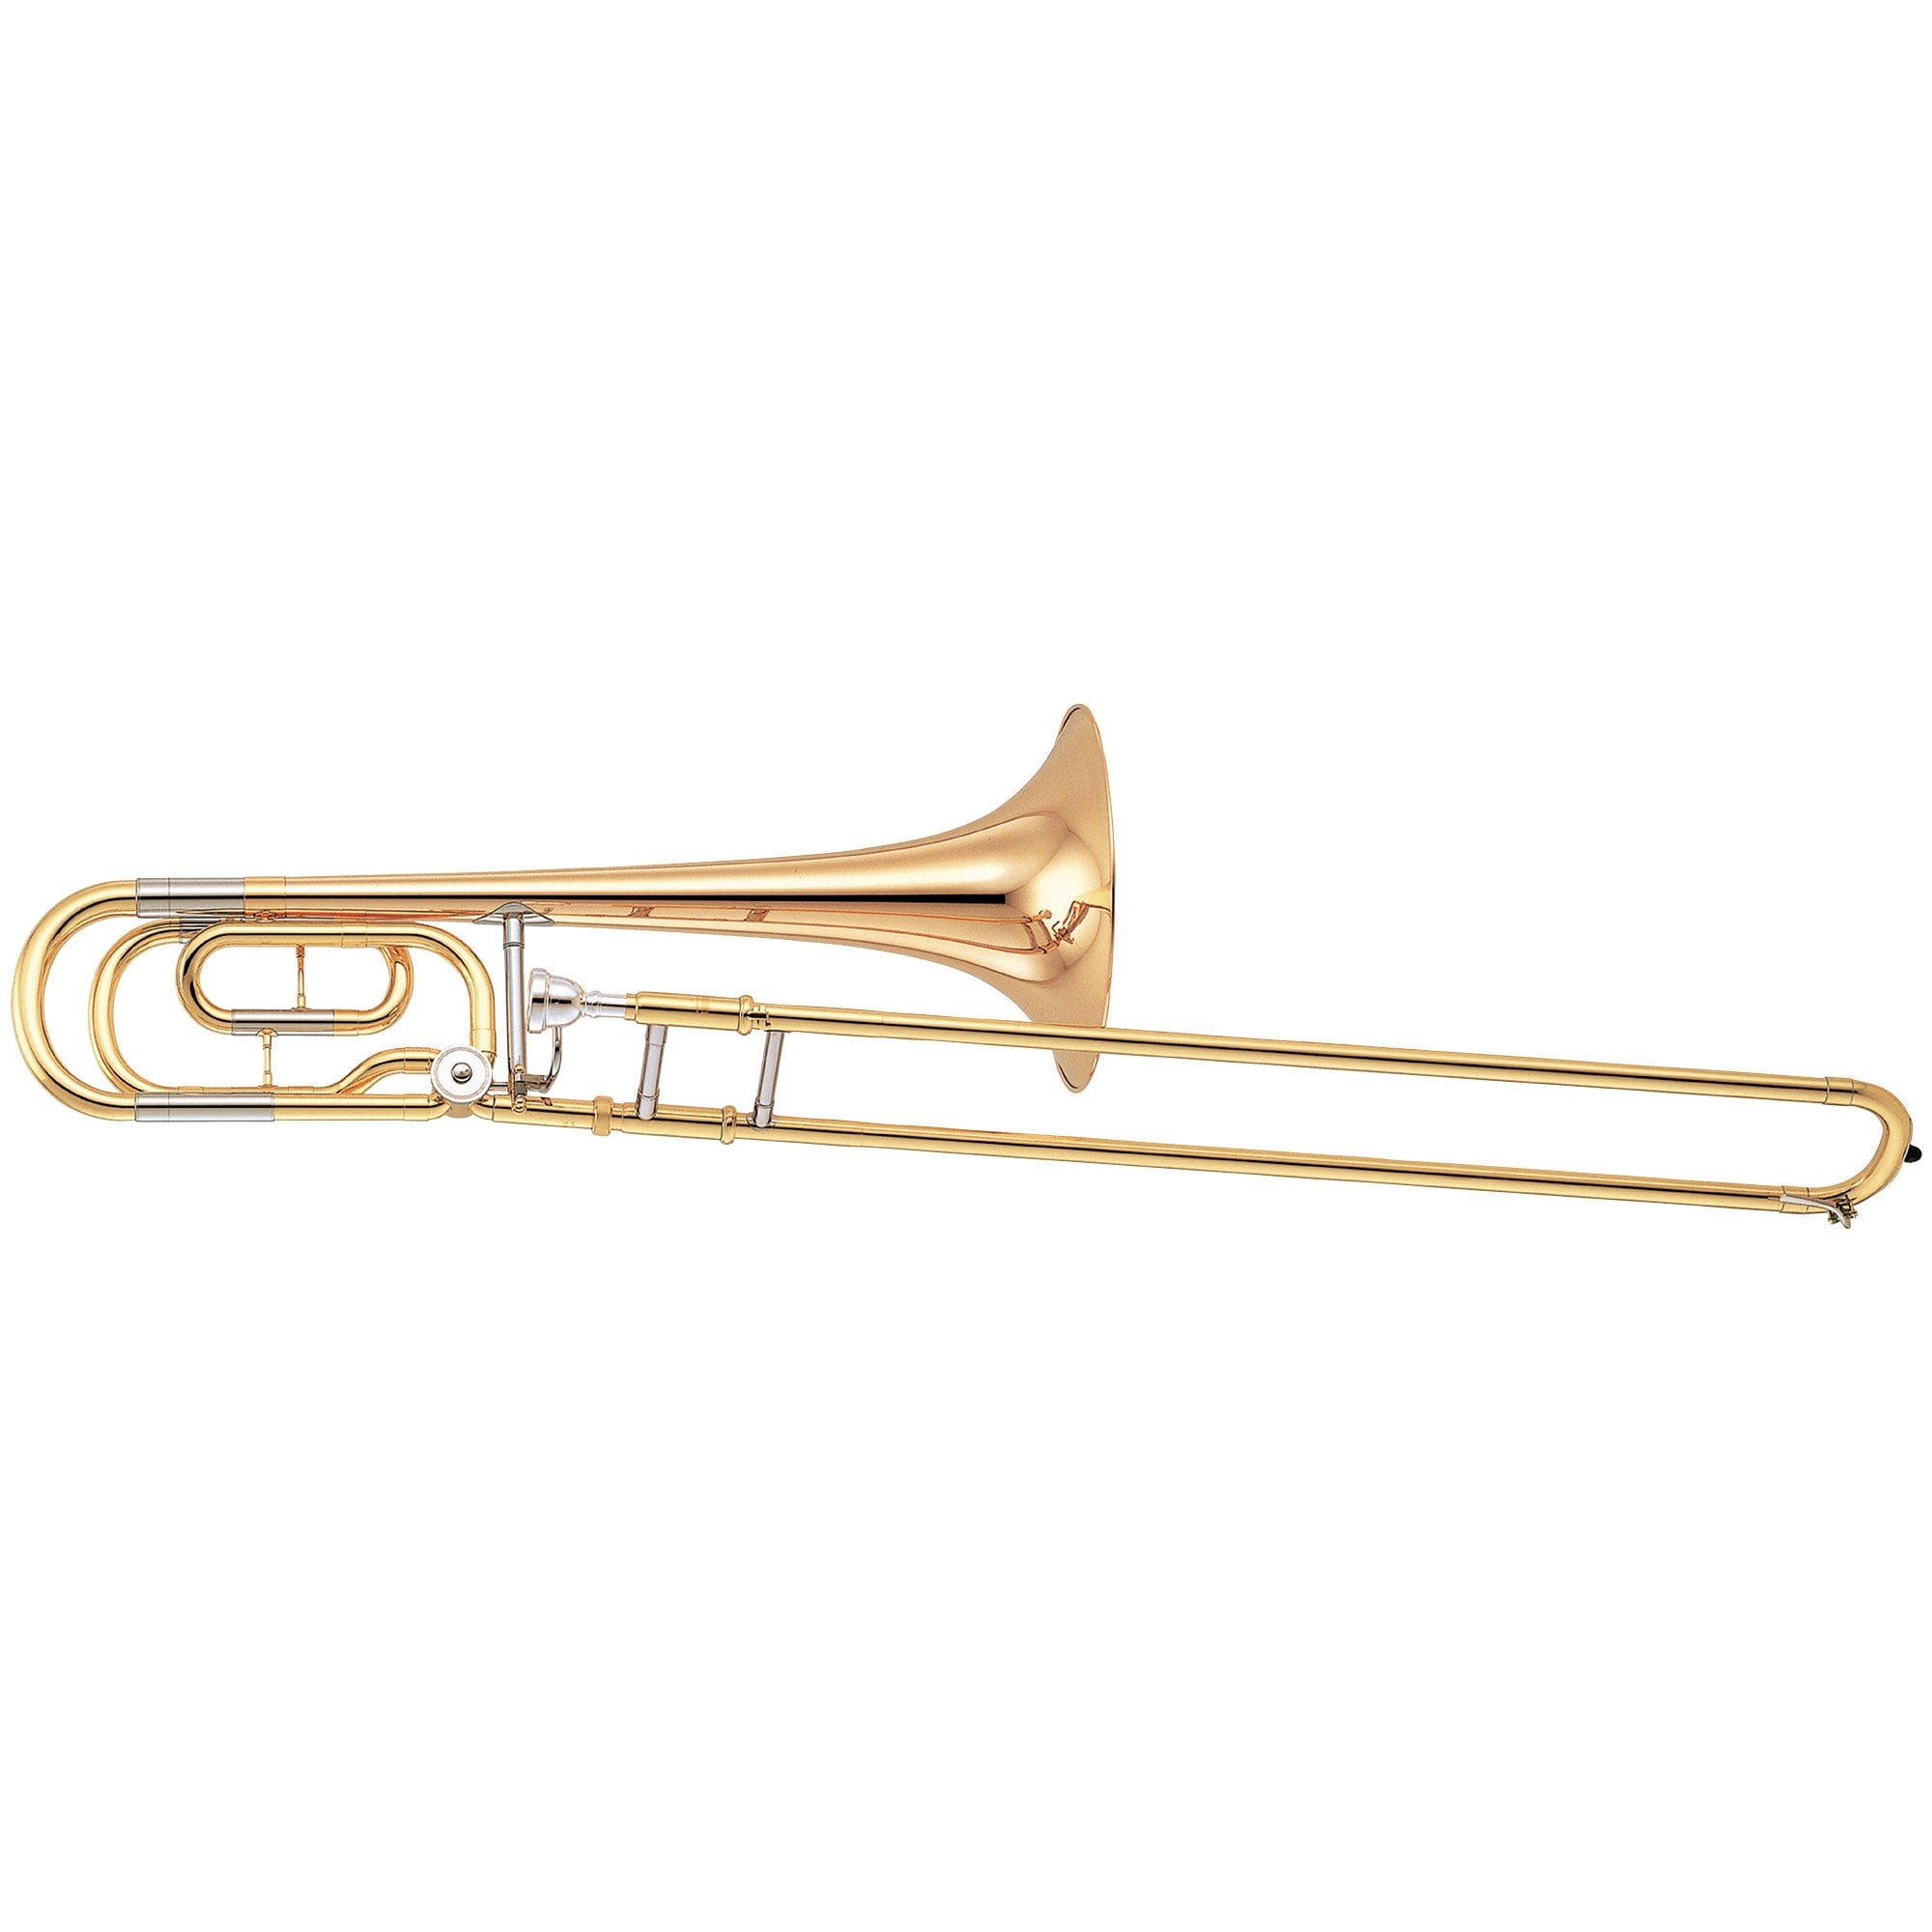 YBL-421G - Overview - Trombones - Brass & Woodwinds - Musical 